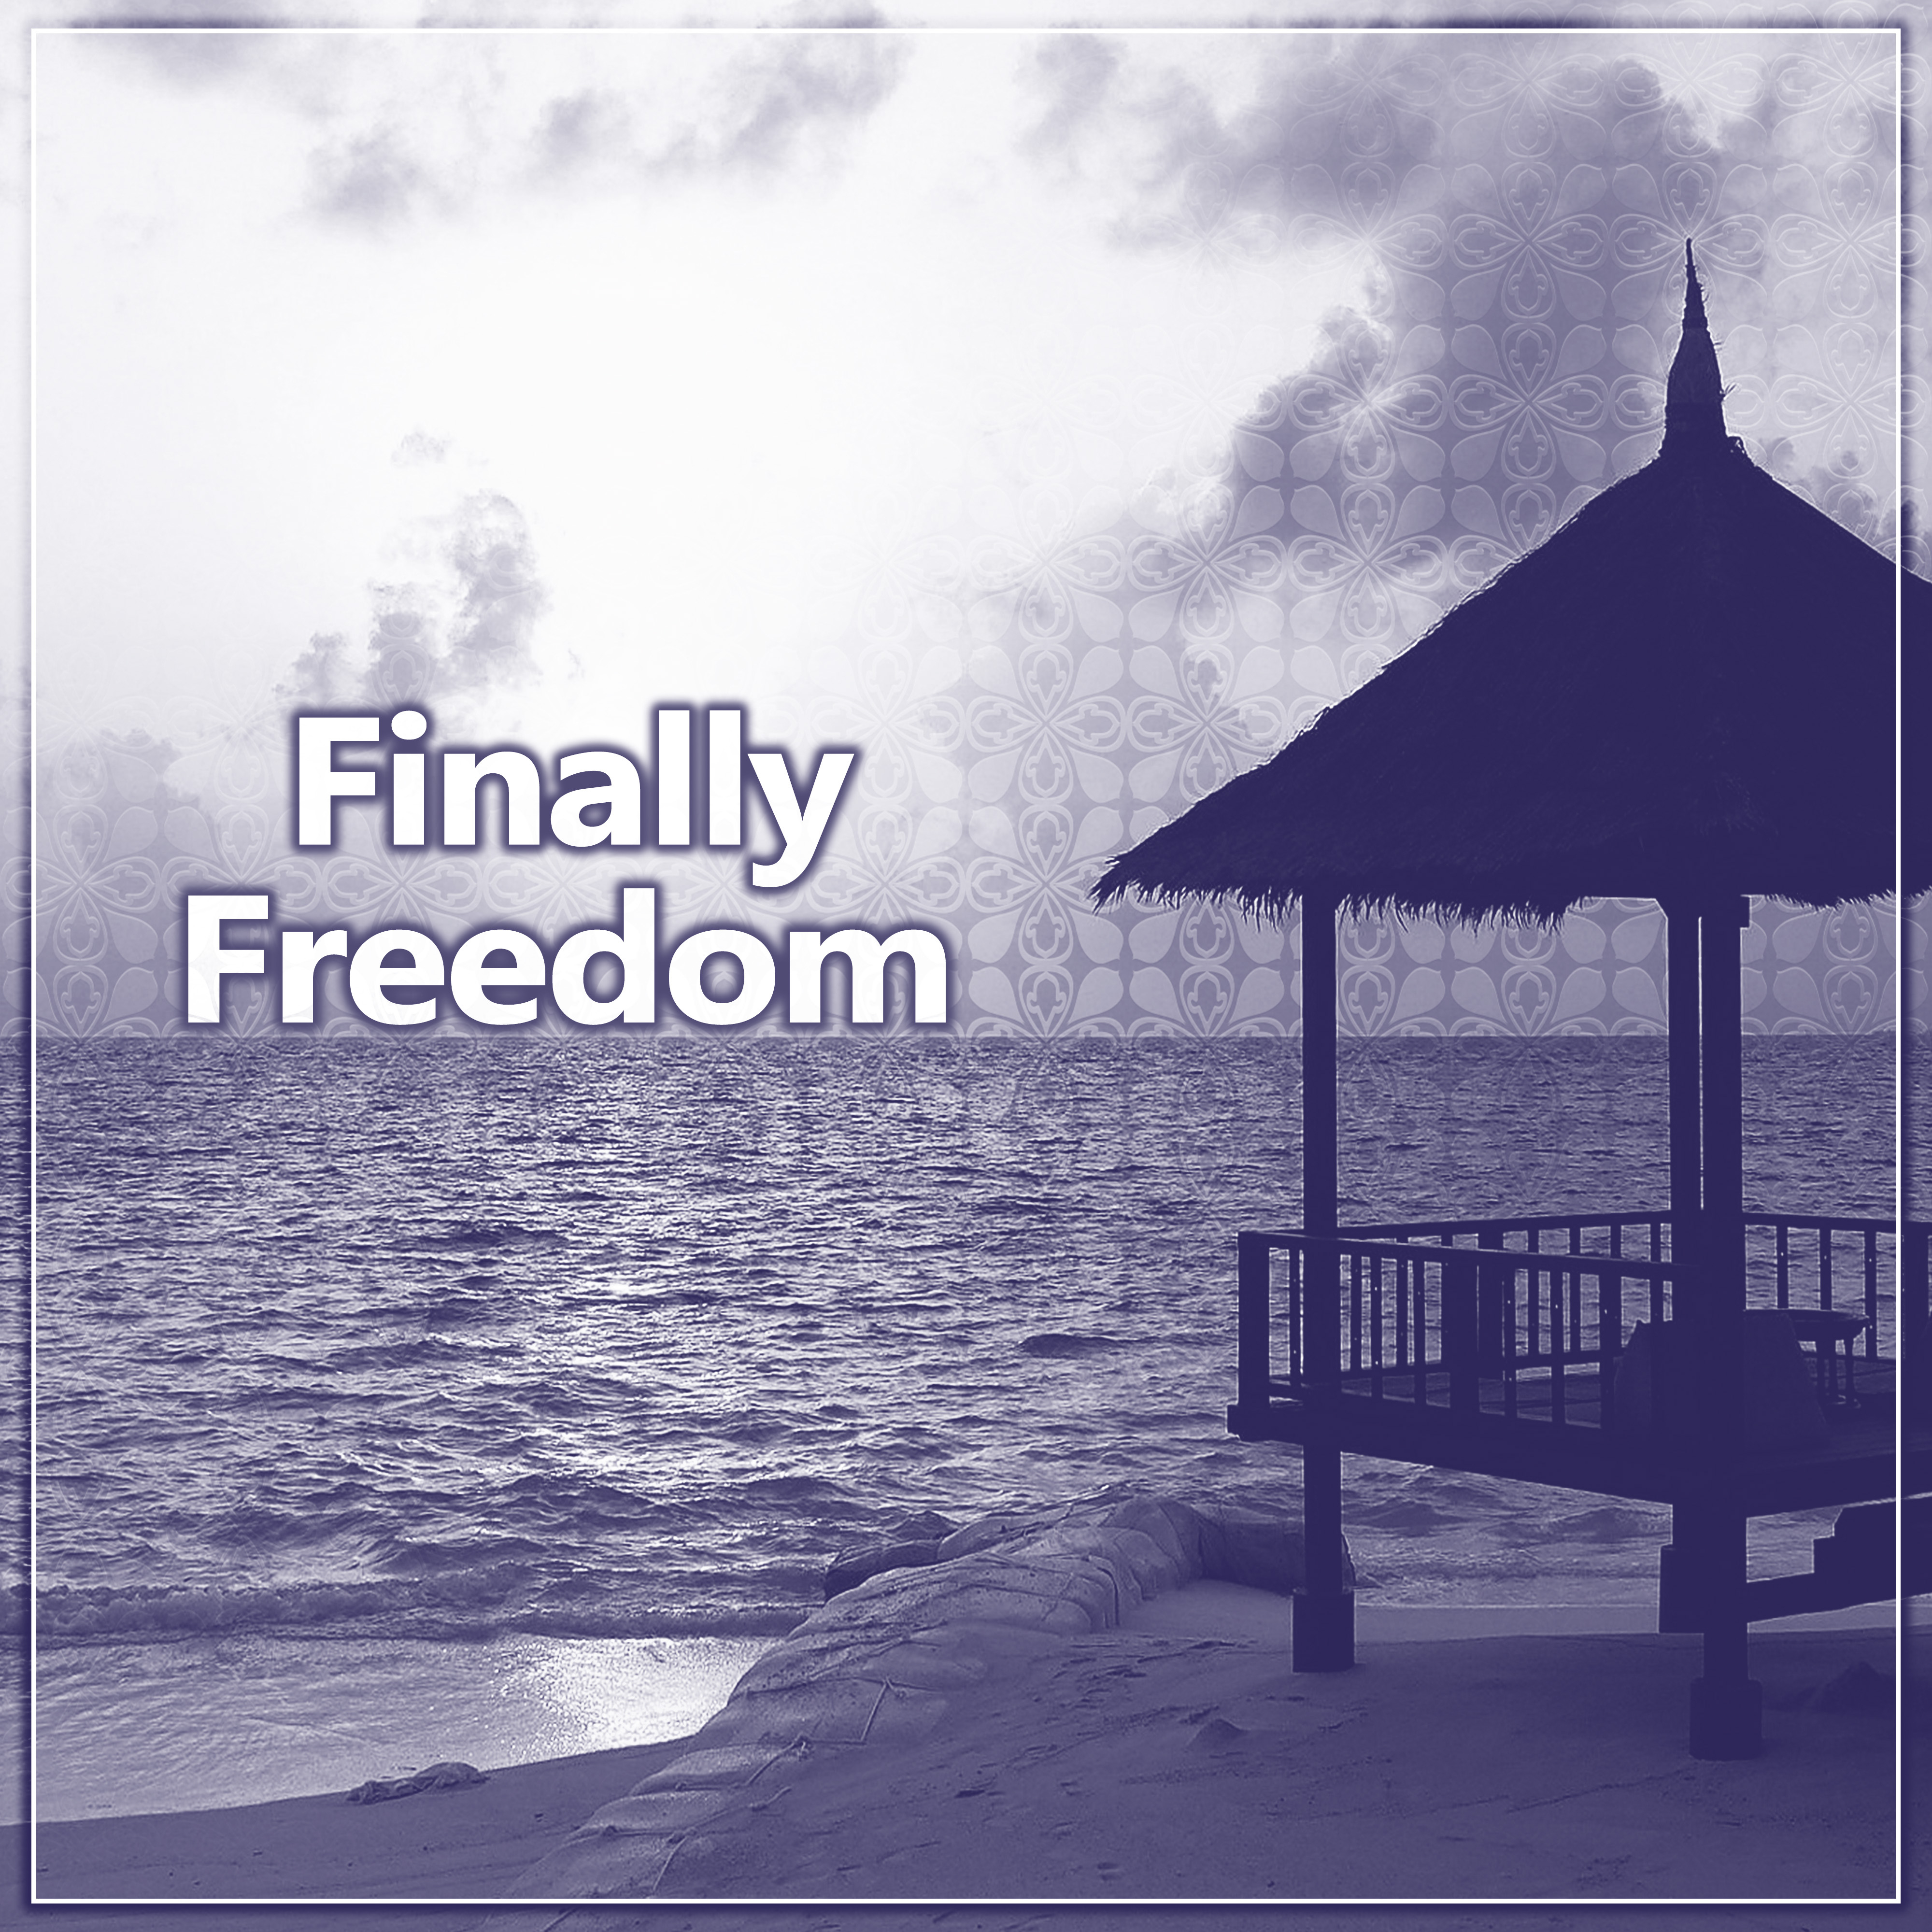 Finally Freedom - Refreshed Air, Wonderful Flora, Rhythms Beach, Gently Sunny